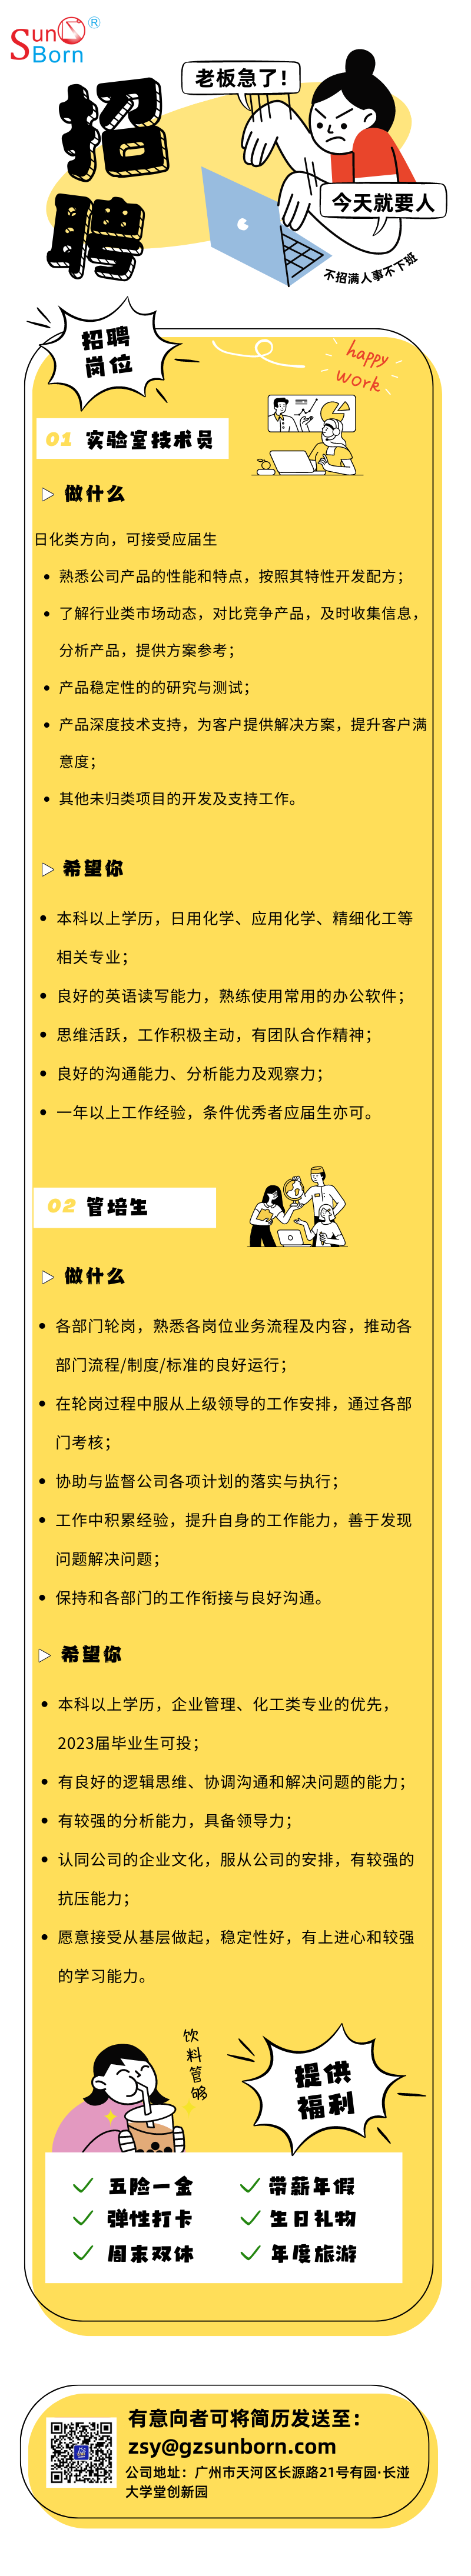 藍黃色插畫企業人才招聘宣傳長圖 (3)